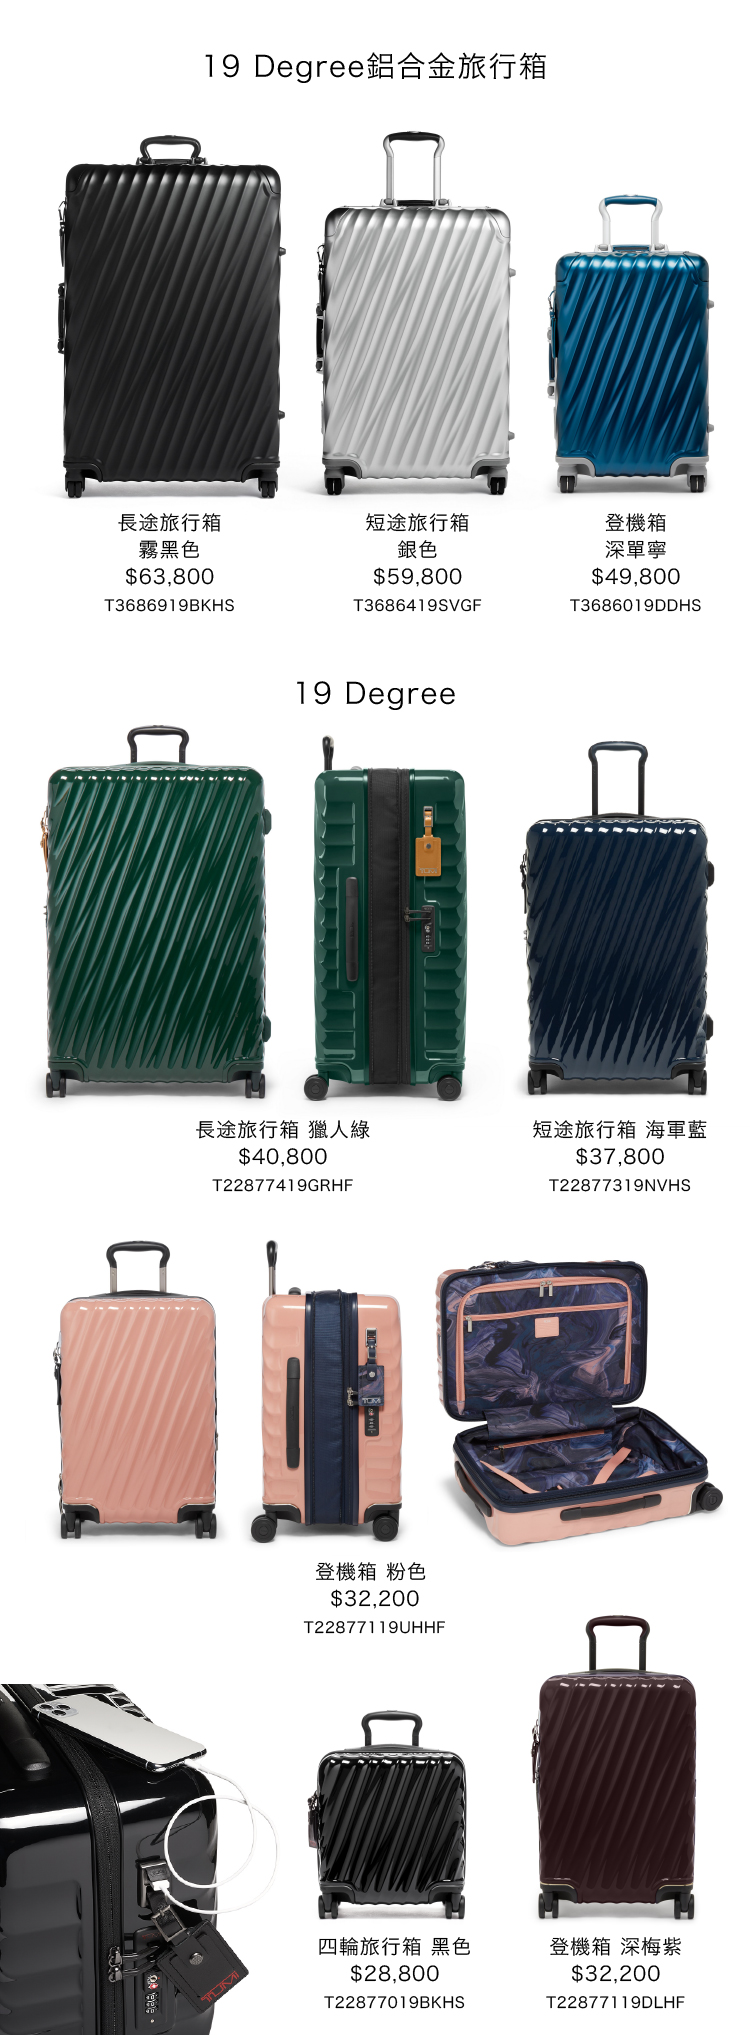 FW23__Luggage2